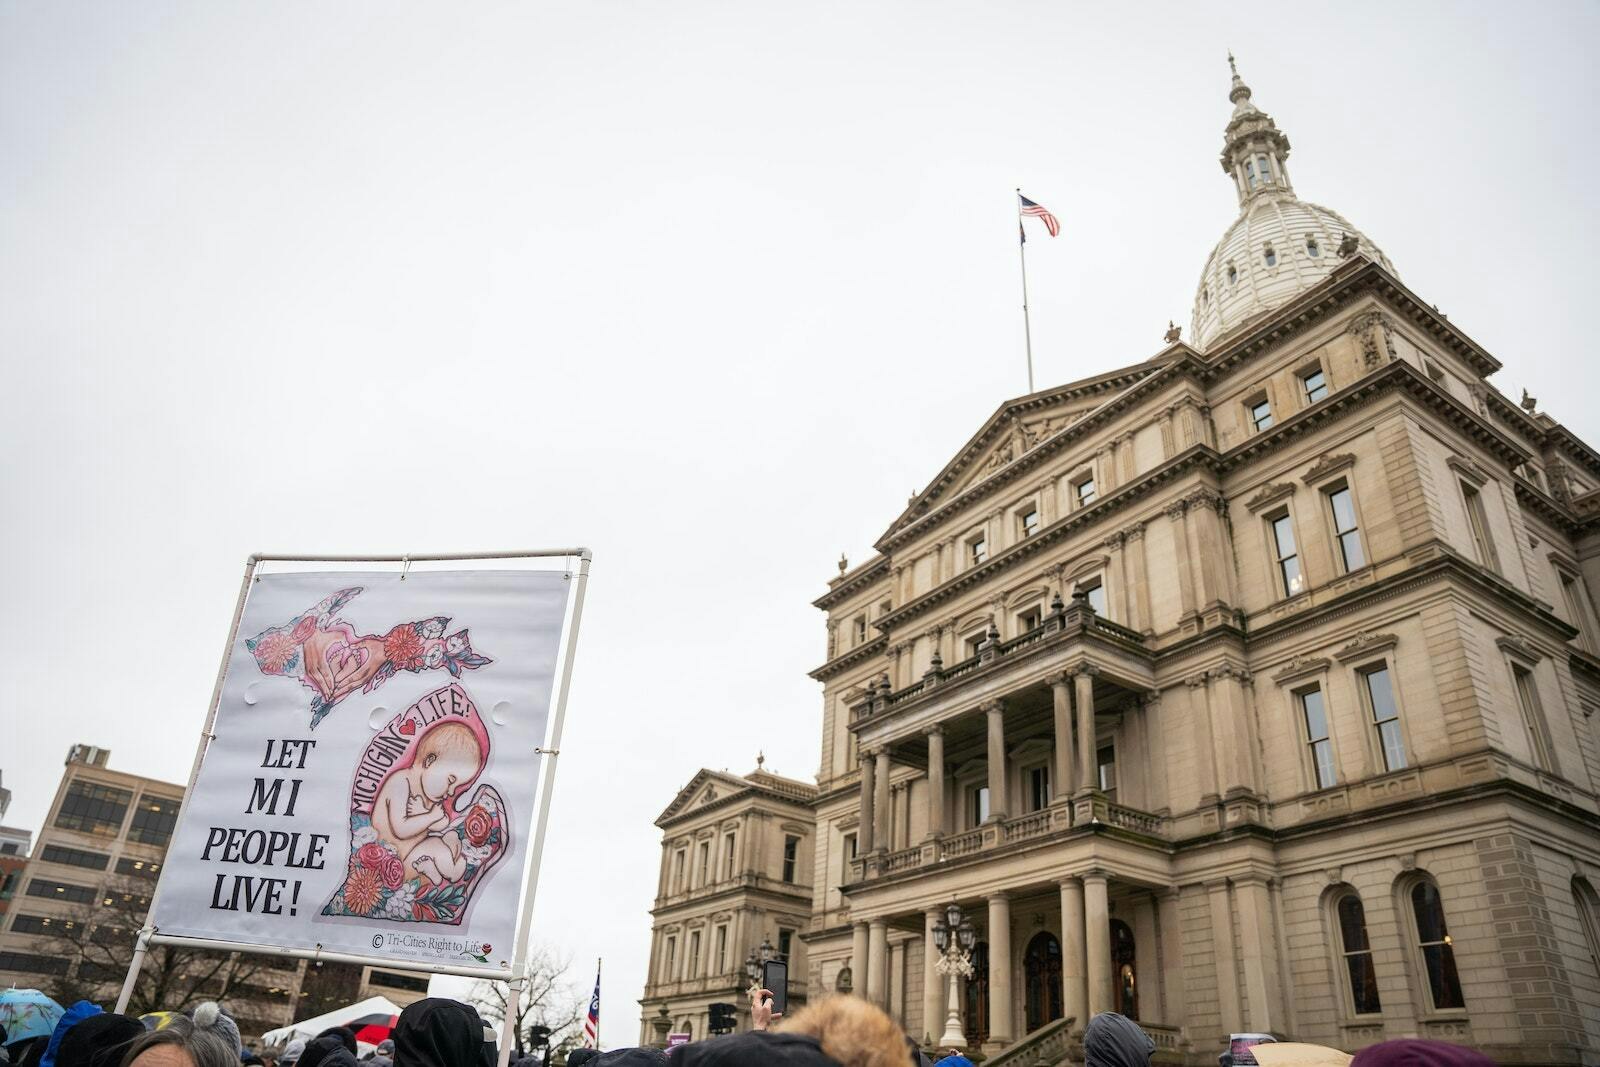 Defensores de la vida se reunieron desde todos los rincones del estado para hacer oír su voz, incluso mientras los legisladores de Michigan estudian nuevas leyes para desregular las clínicas abortistas, ampliar el acceso al aborto y eliminar las protecciones básicas para las mujeres.